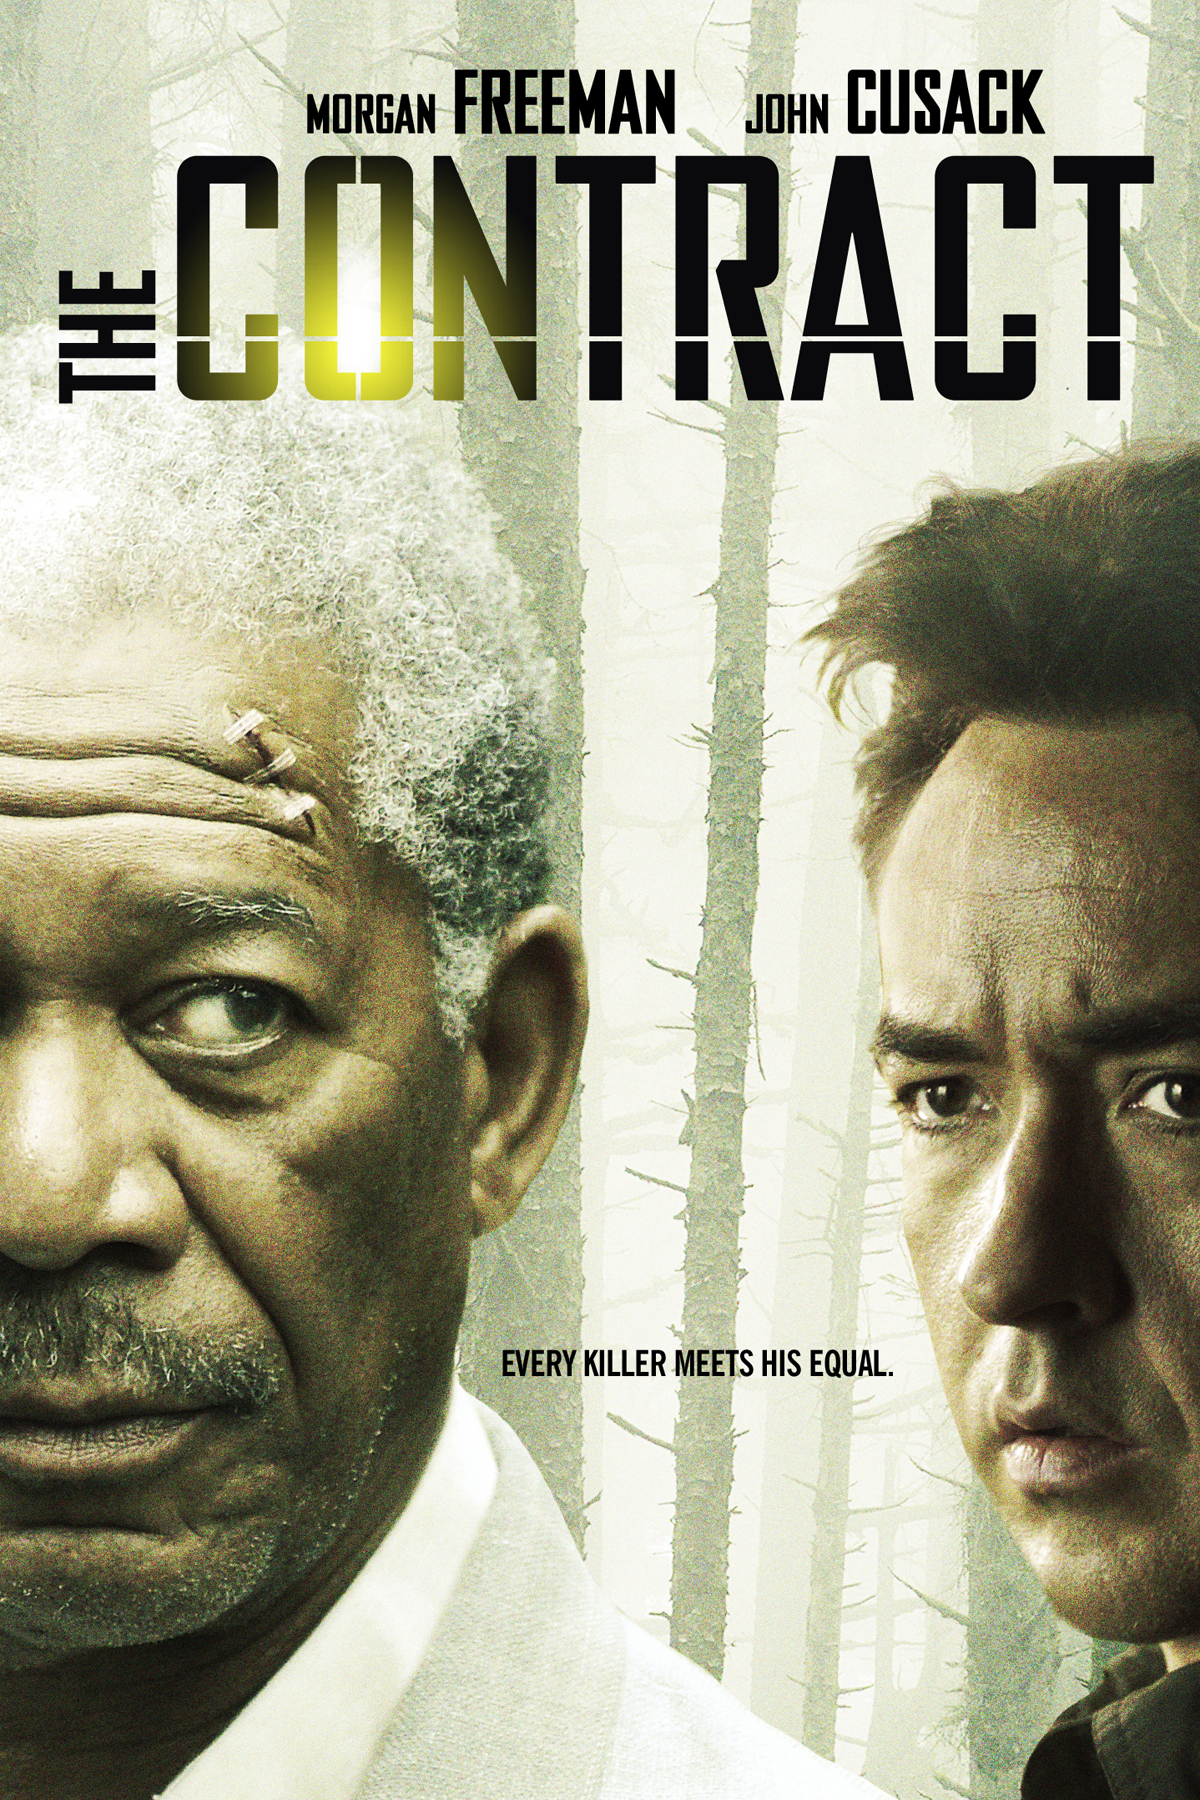 The Contract (2006) freeman, freeman movie